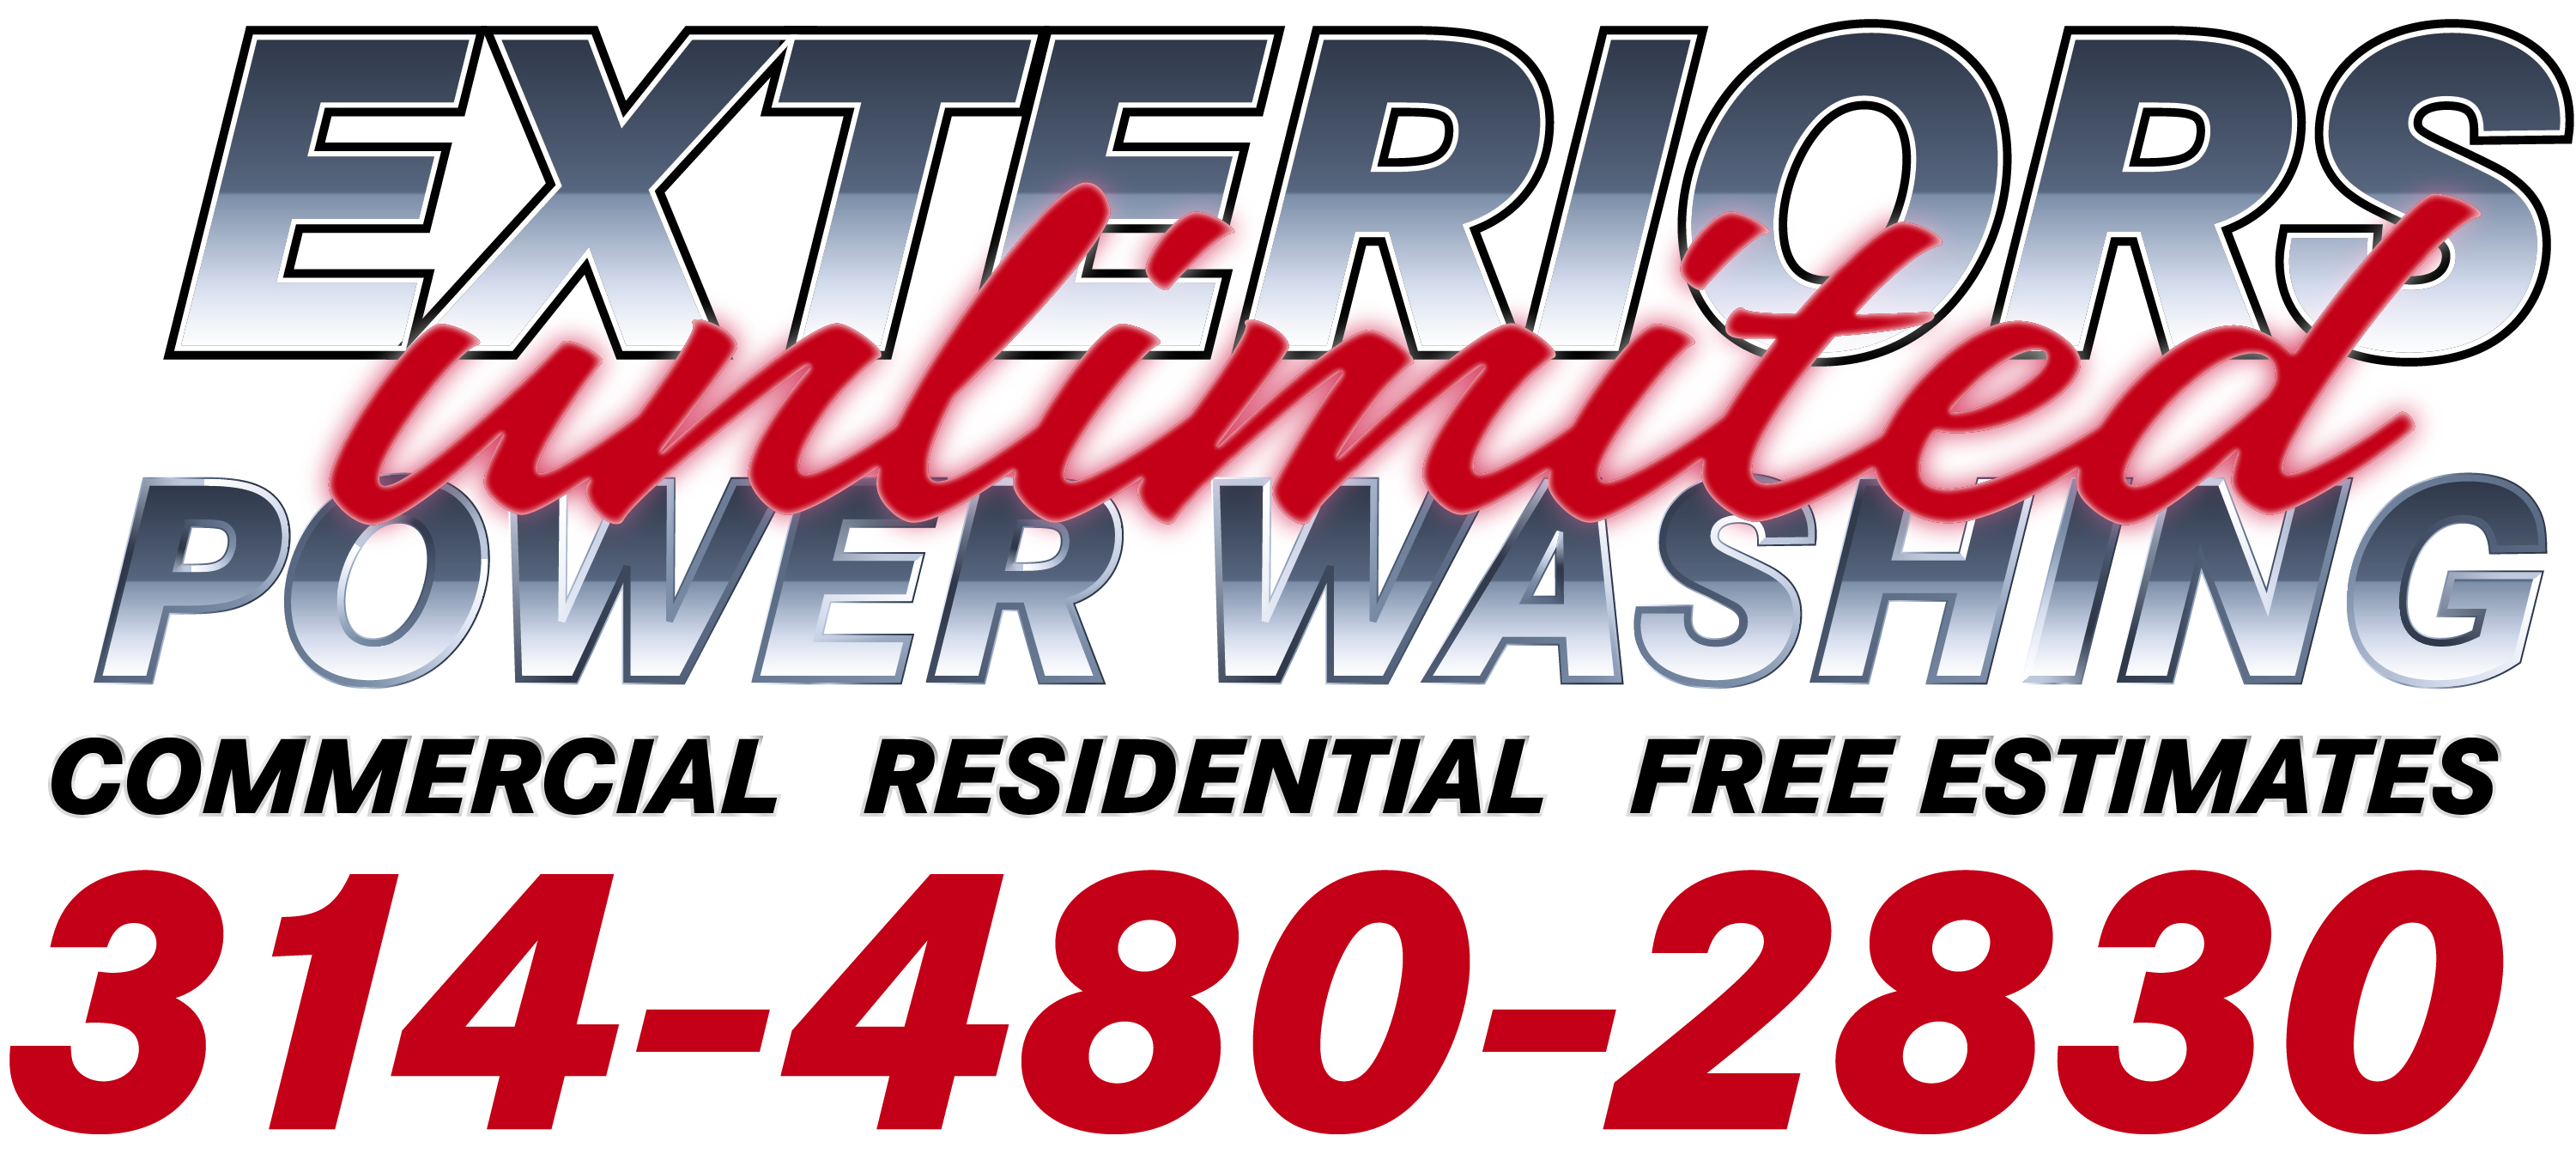 Exteriors Unlimited Powerwashing, LLC Logo